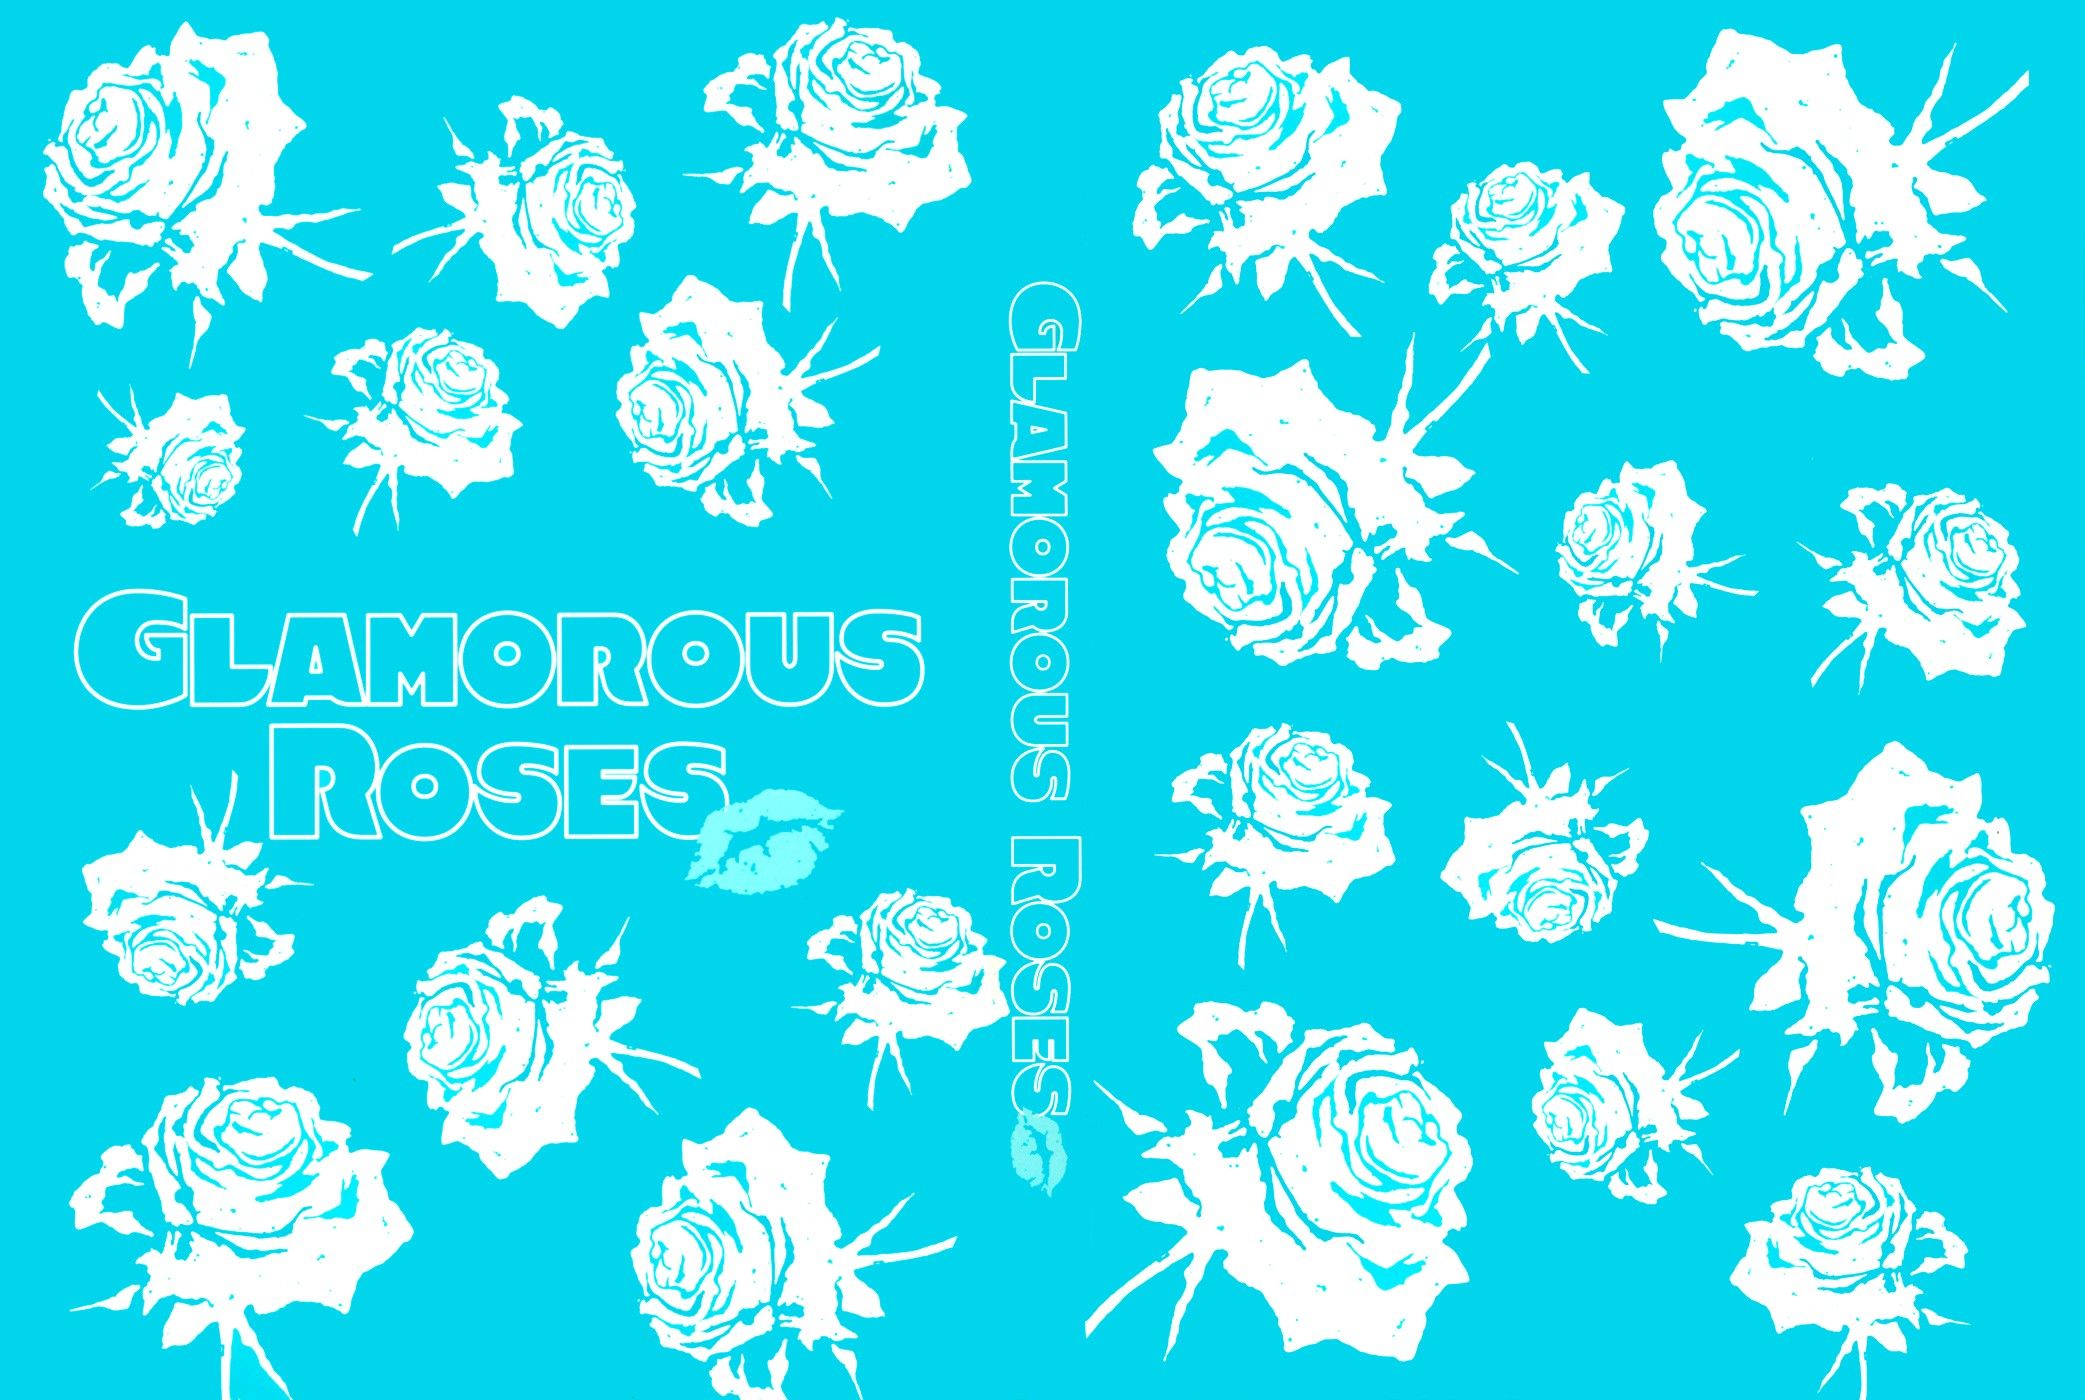 Glamorous Roses c1 - 1